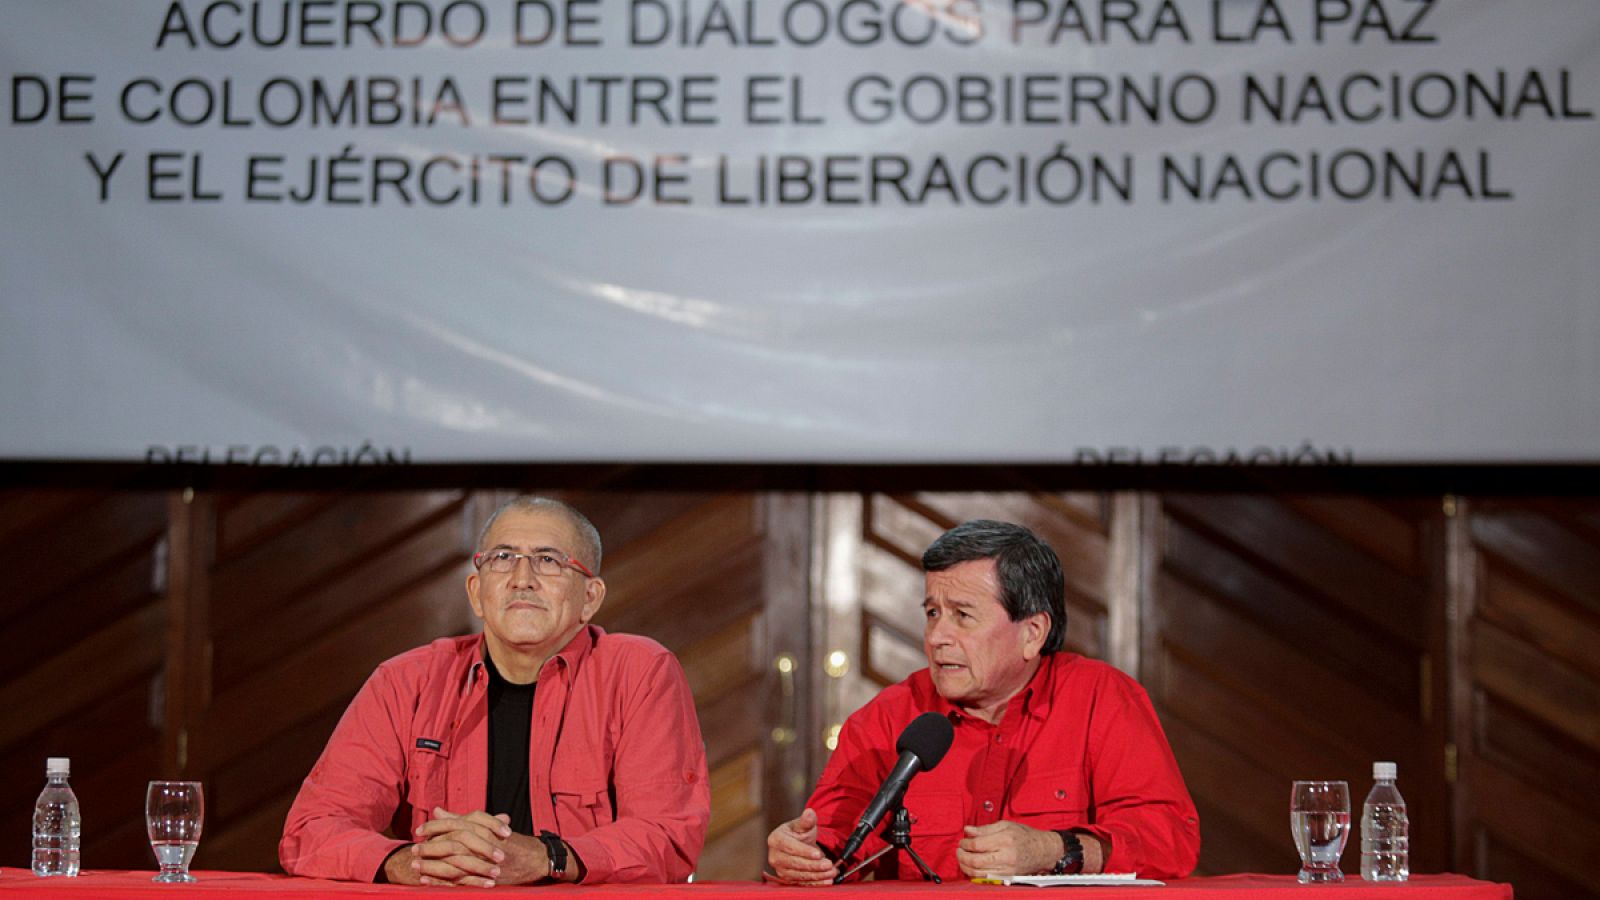 Los representantes del Ejercito de Liberación Nacional (ELN), "Antonio García" y Pablo Beltrán, durante una rueda de prensa.